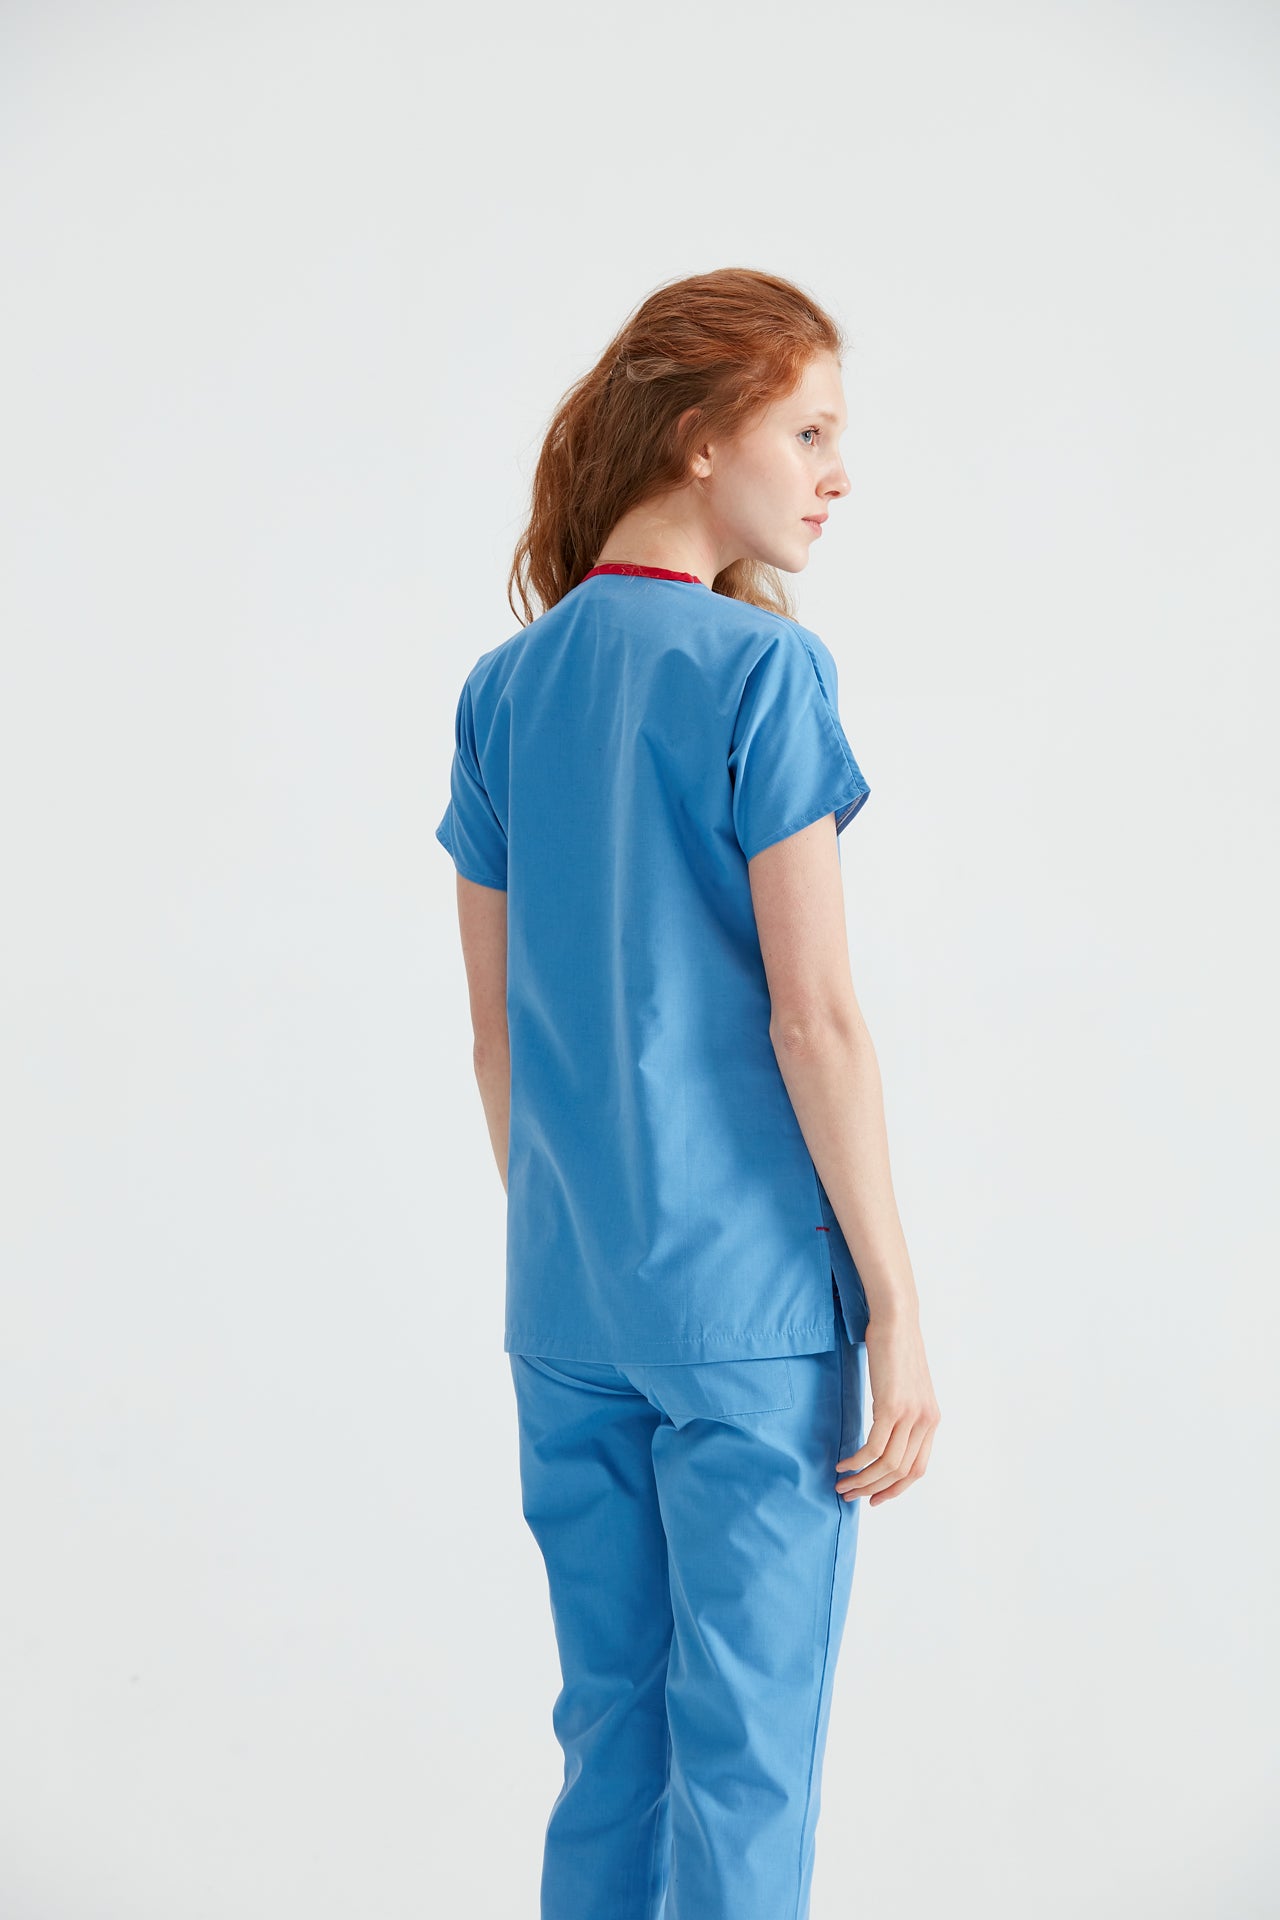  Asistenta medicala imbracata in costum albastru Parliament Blue, vedere din spate